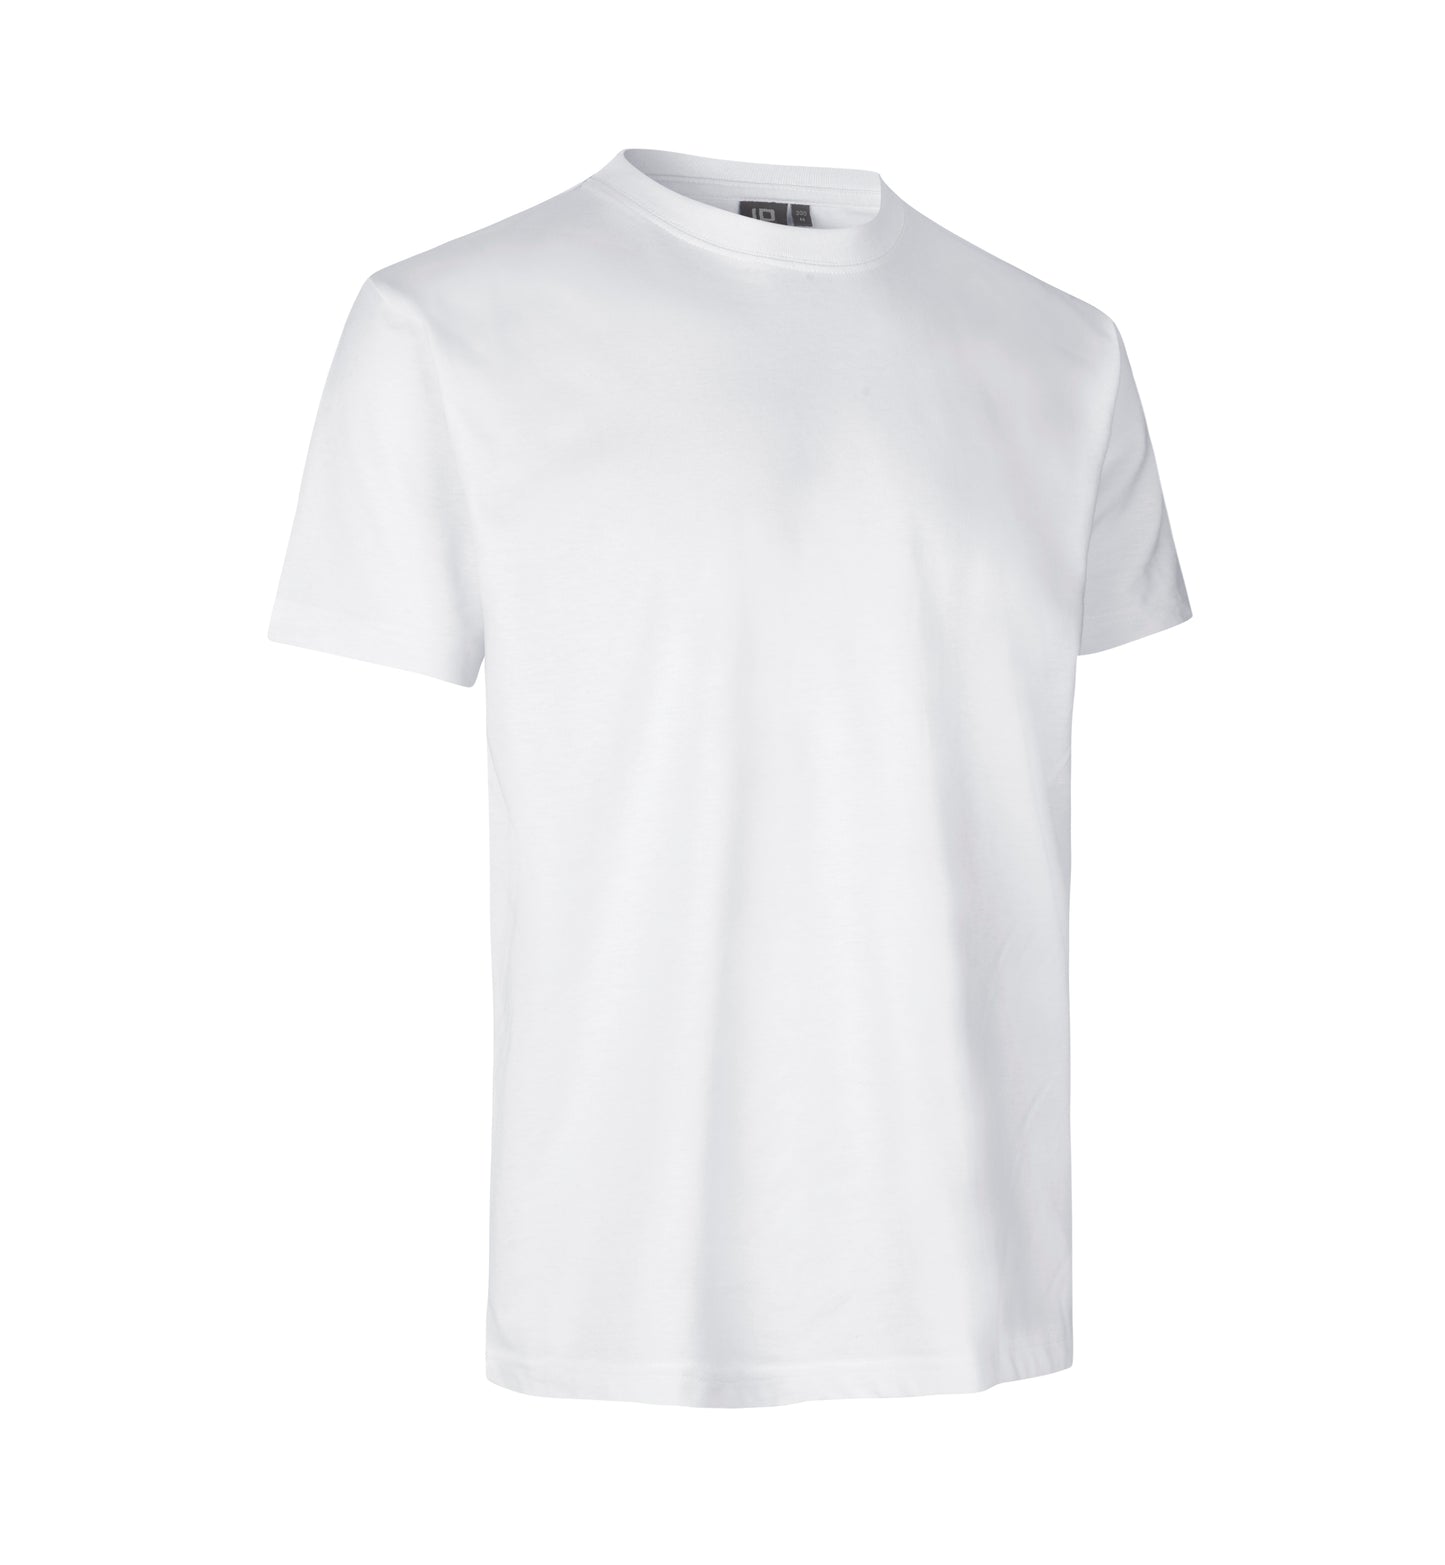 ID PRO Wear T-Shirt 0300 (Privatverkauf)